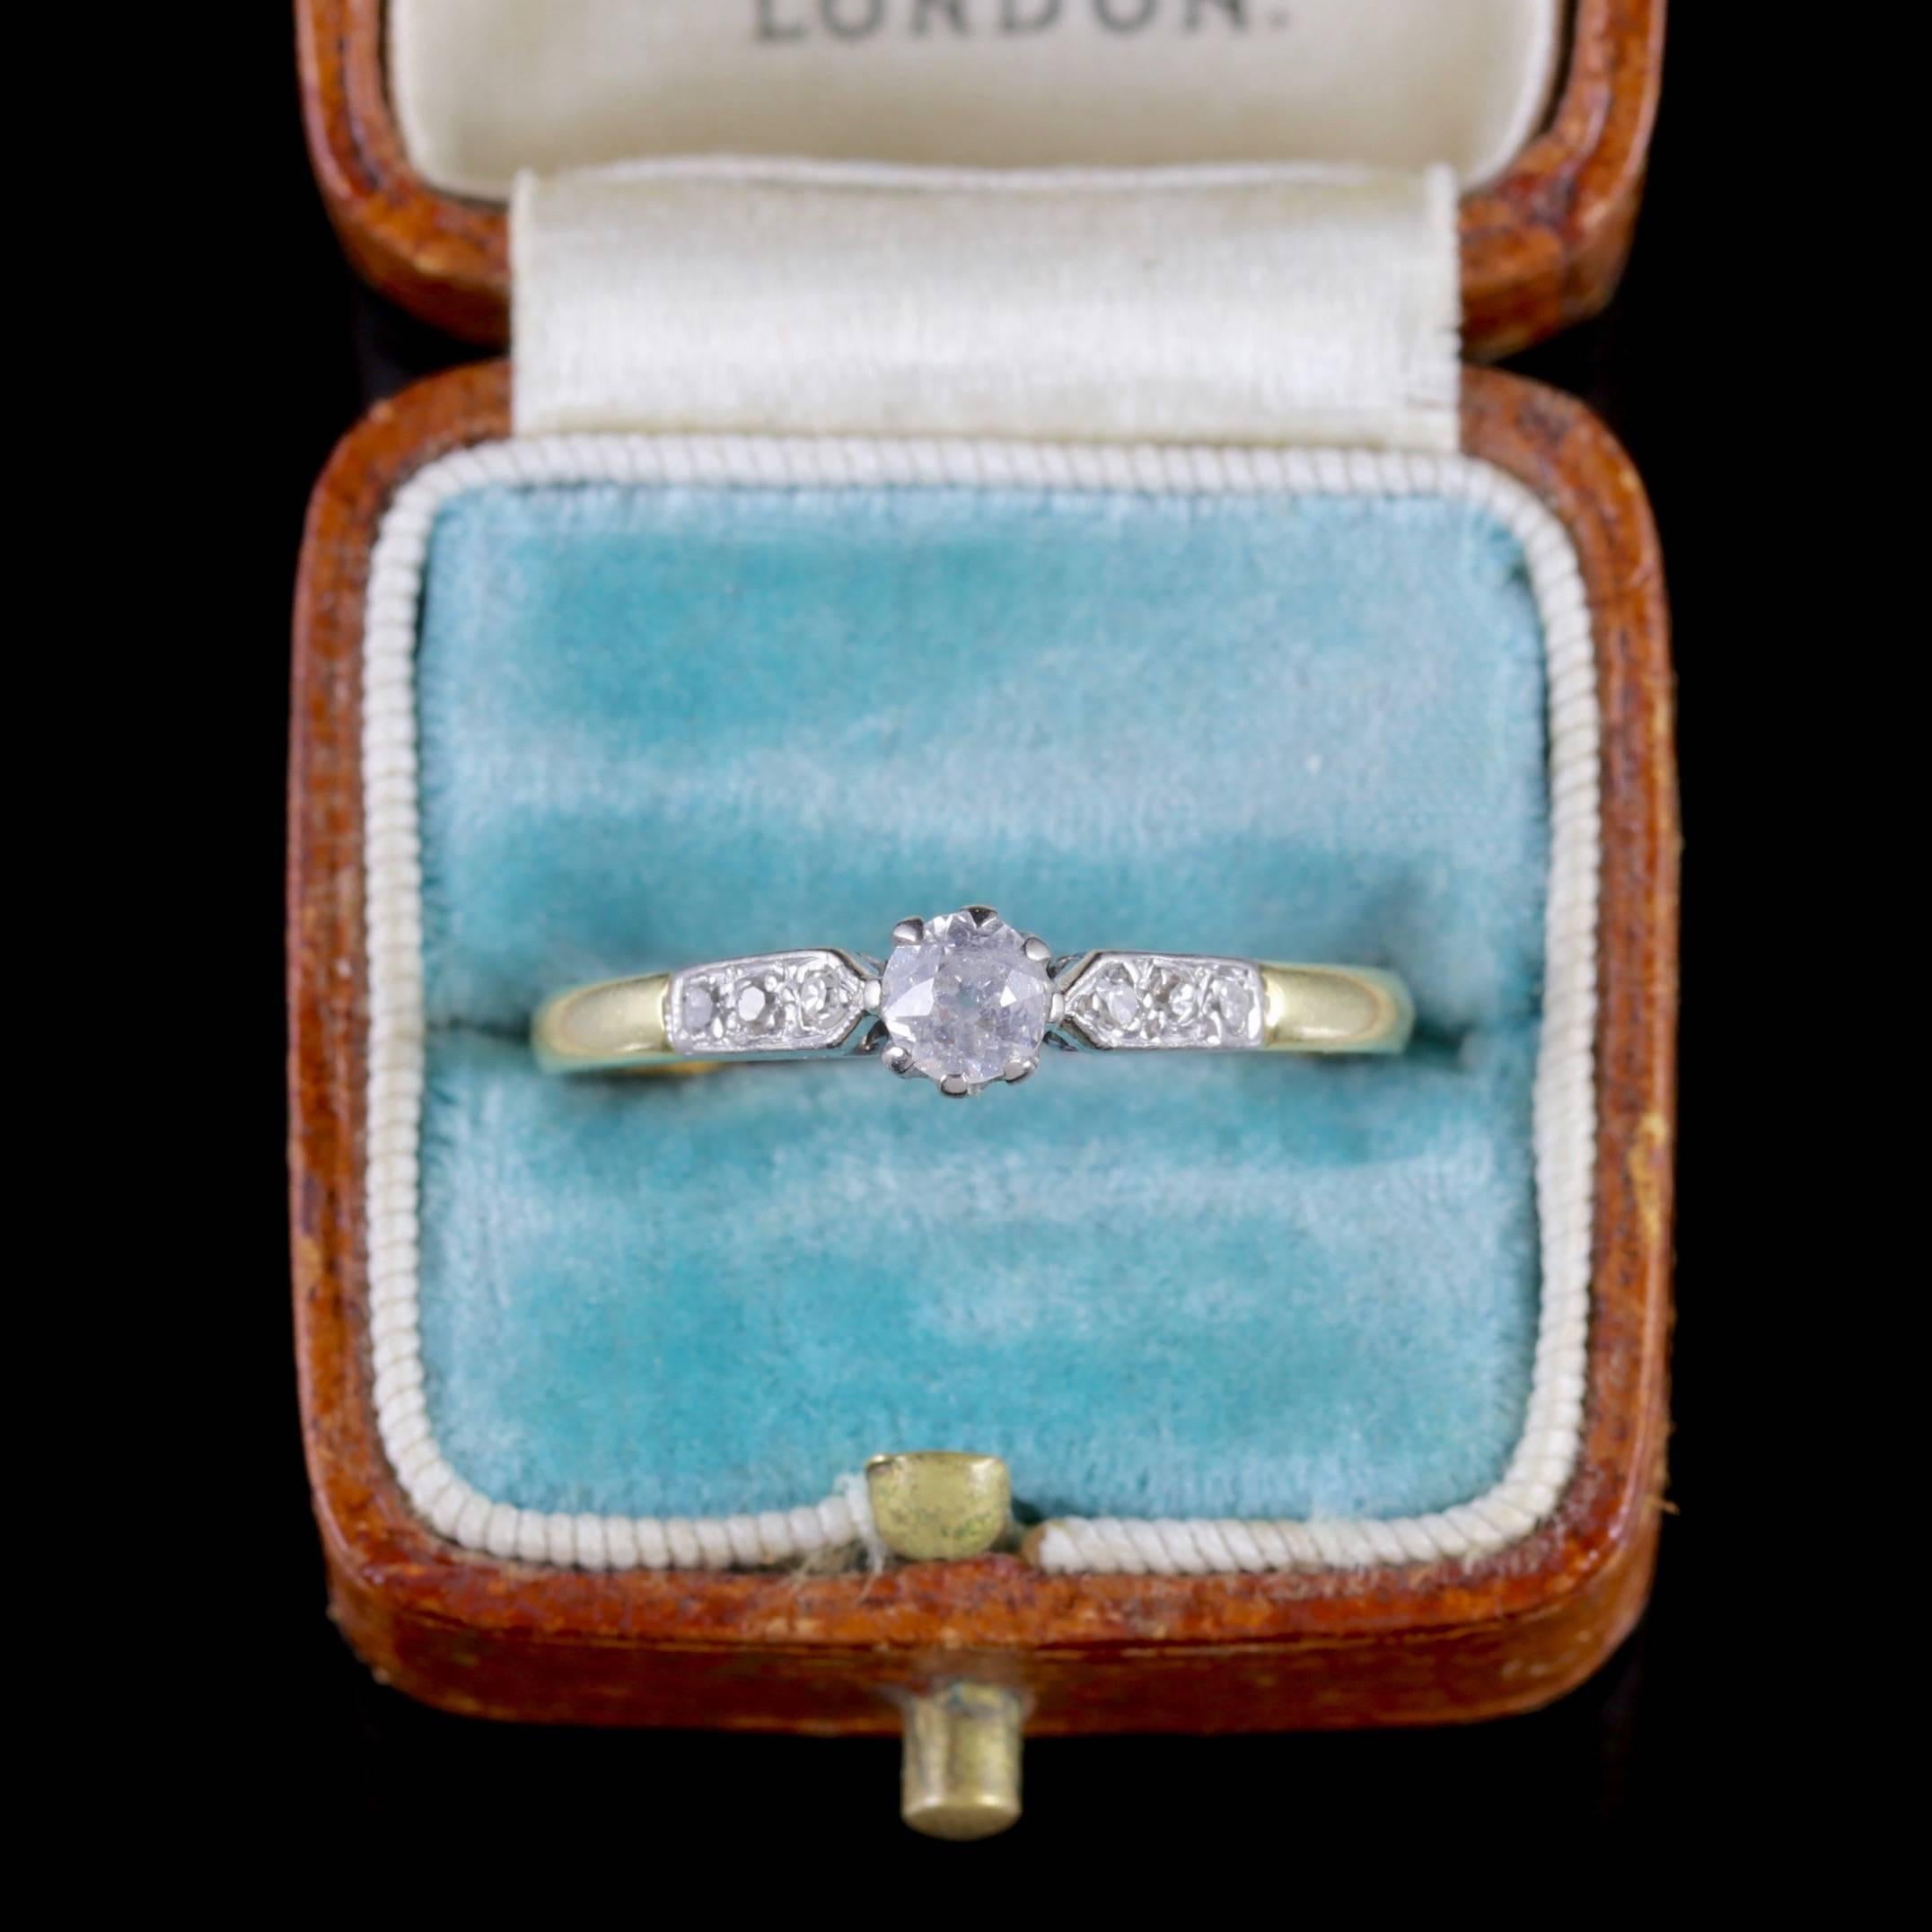 Antique Edwardian Diamond Ring 18 Carat Gold Engagement Ring, circa 1915 3